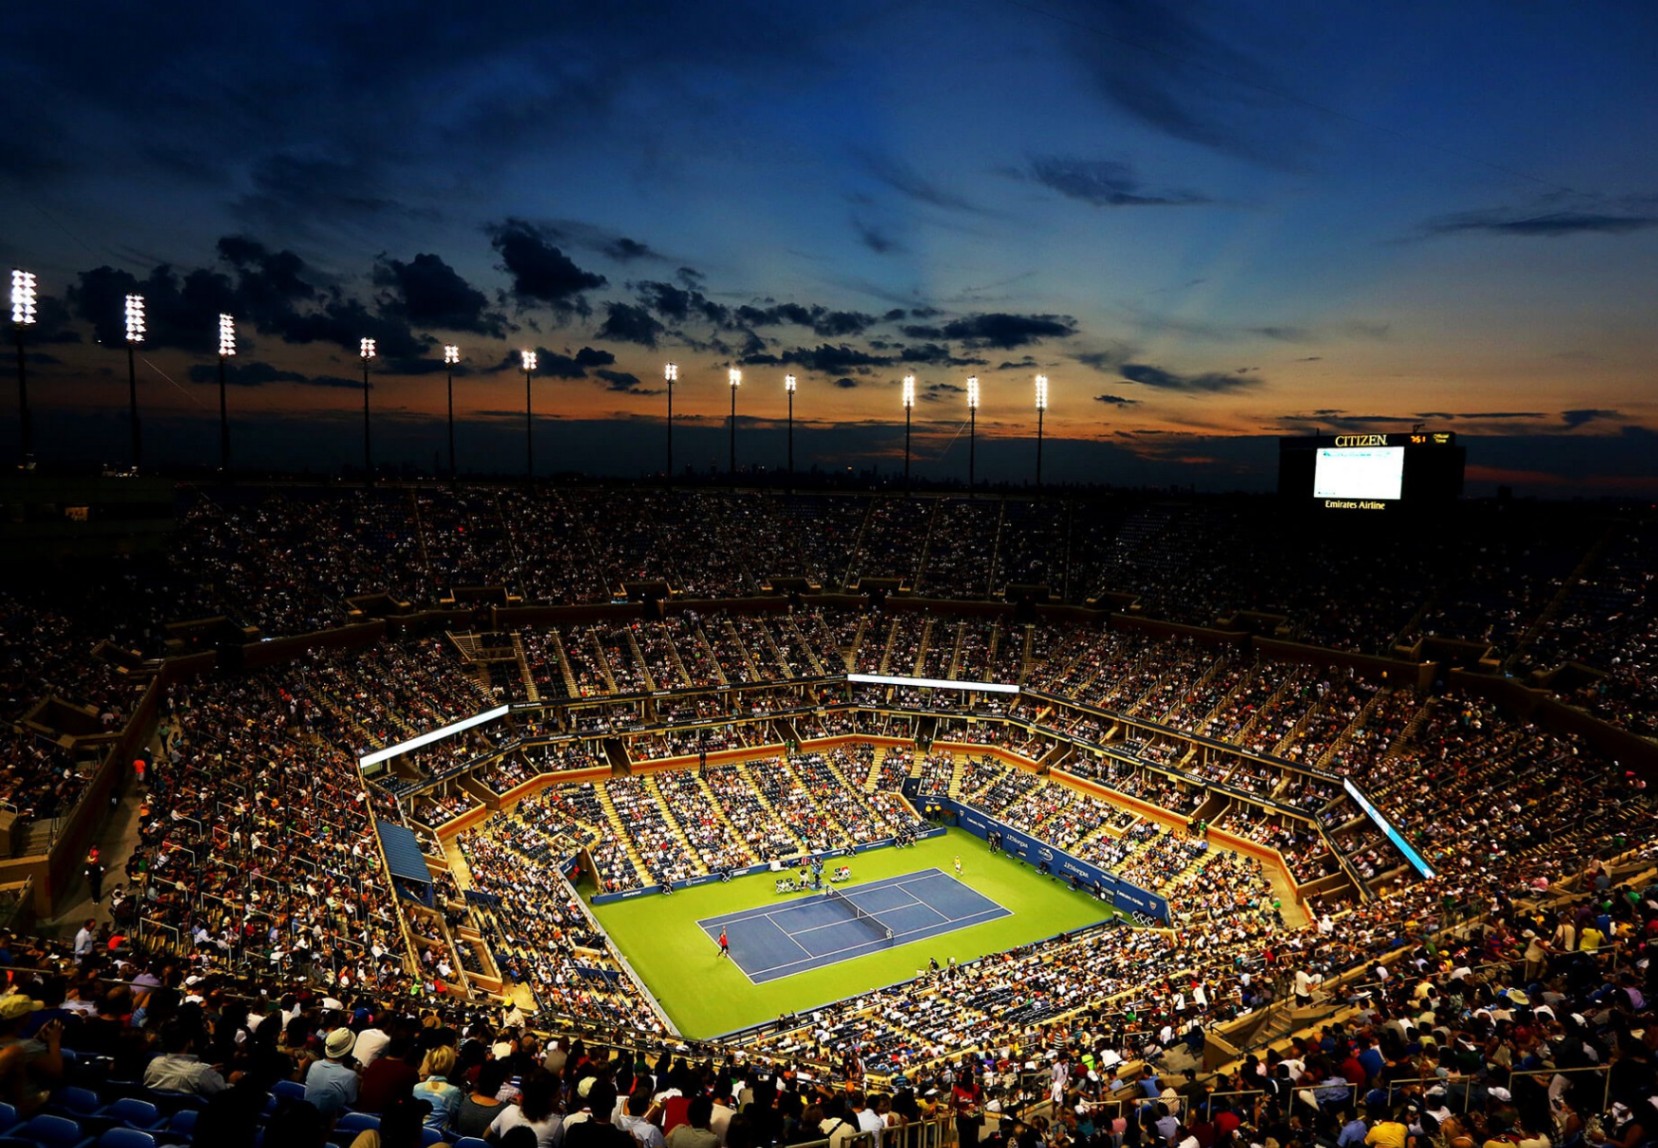 Descubra os principais torneios de tênis ao redor do mundo